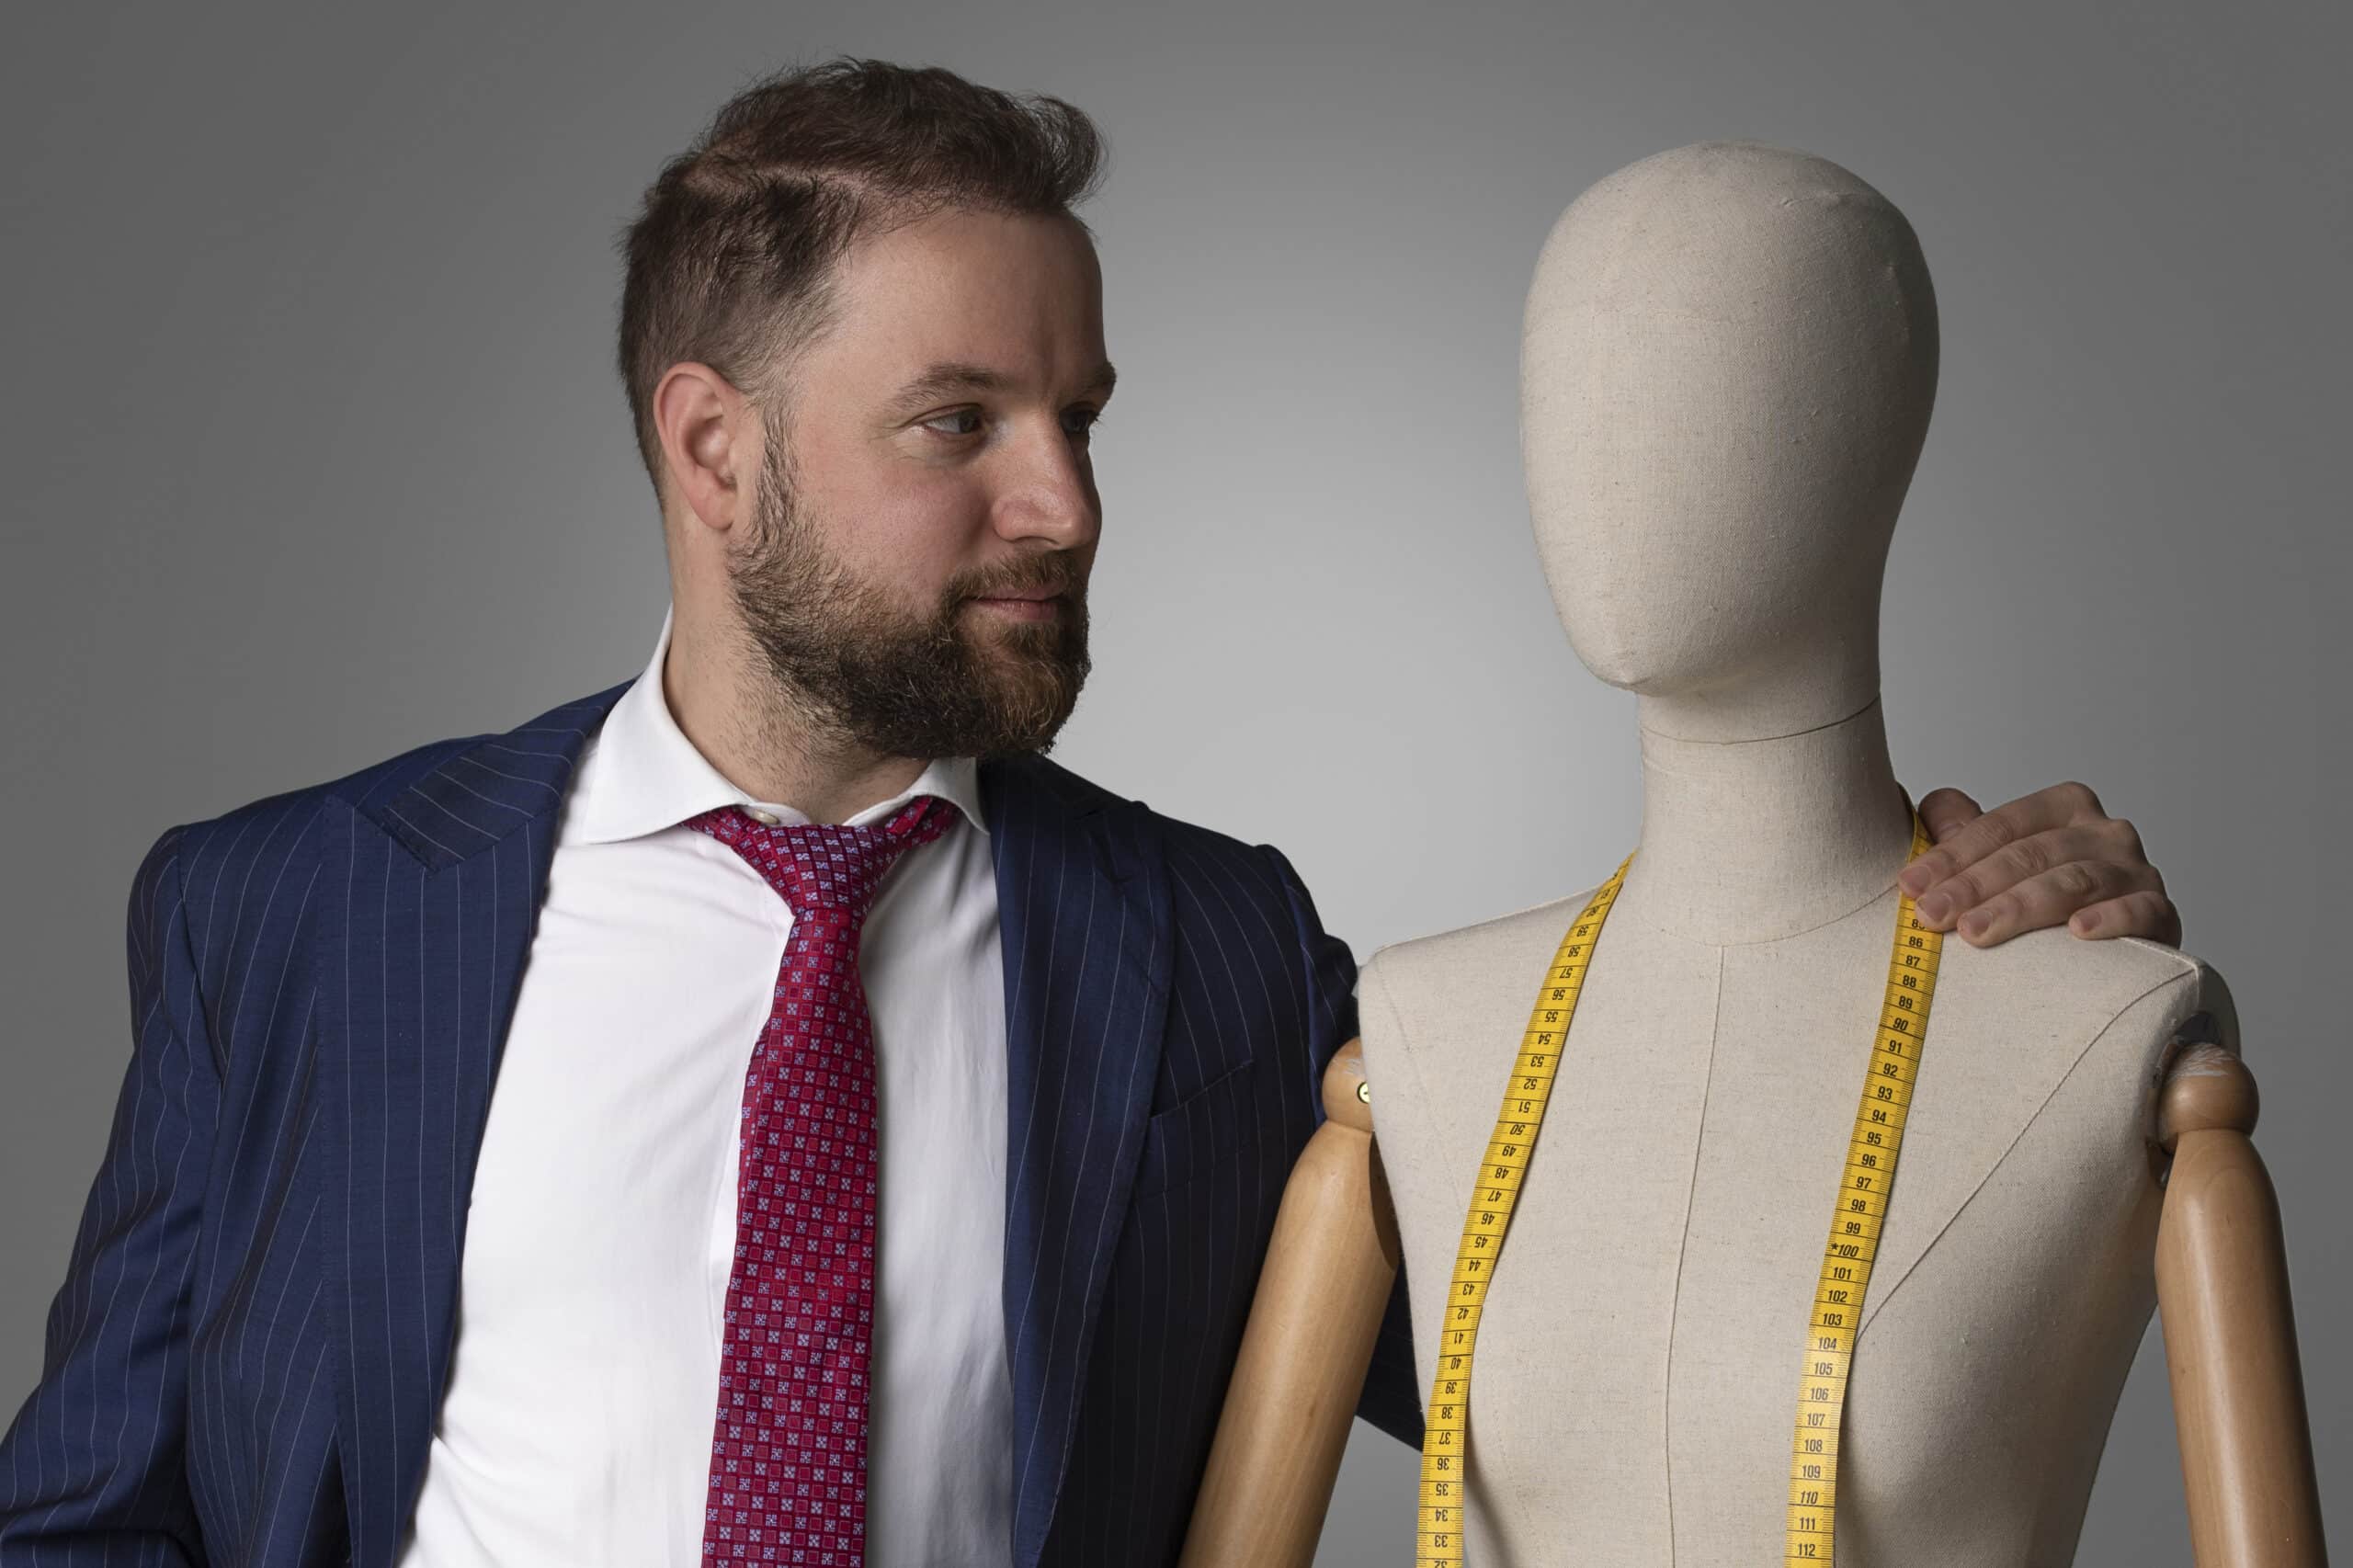 一名西装革履的男子站在一个人体模型旁，展示着他的时装品牌。